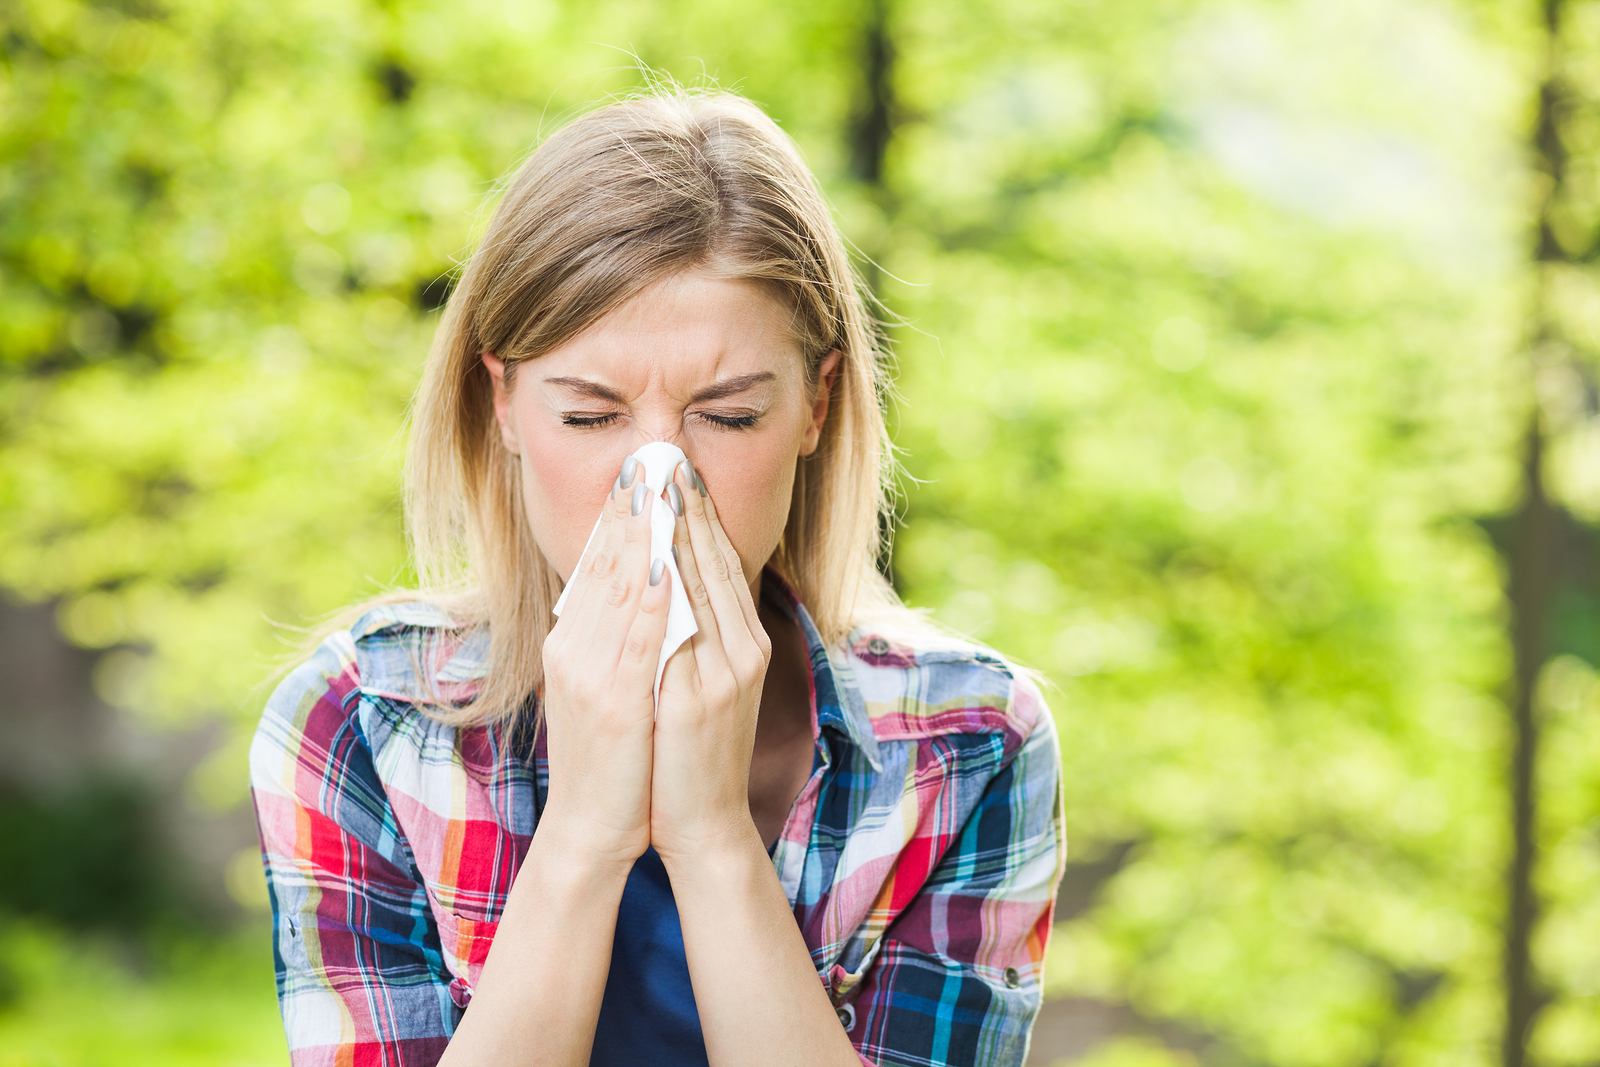 Allergies? Consider Allergen Testing